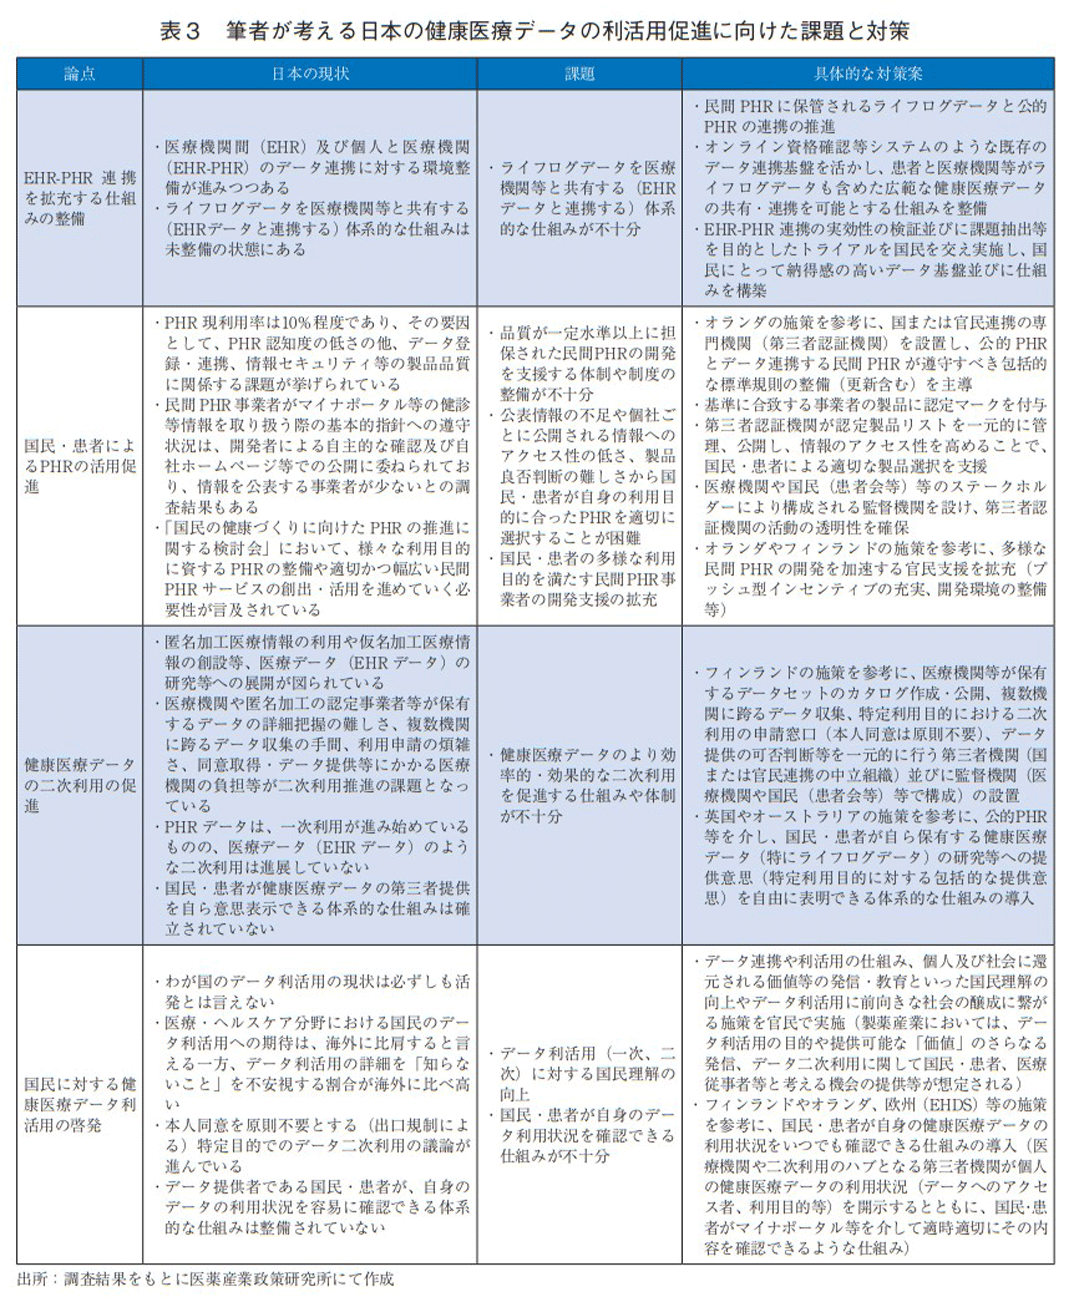 表3 筆者が考える日本の健康医療データの利活用促進に向けた課題と対策